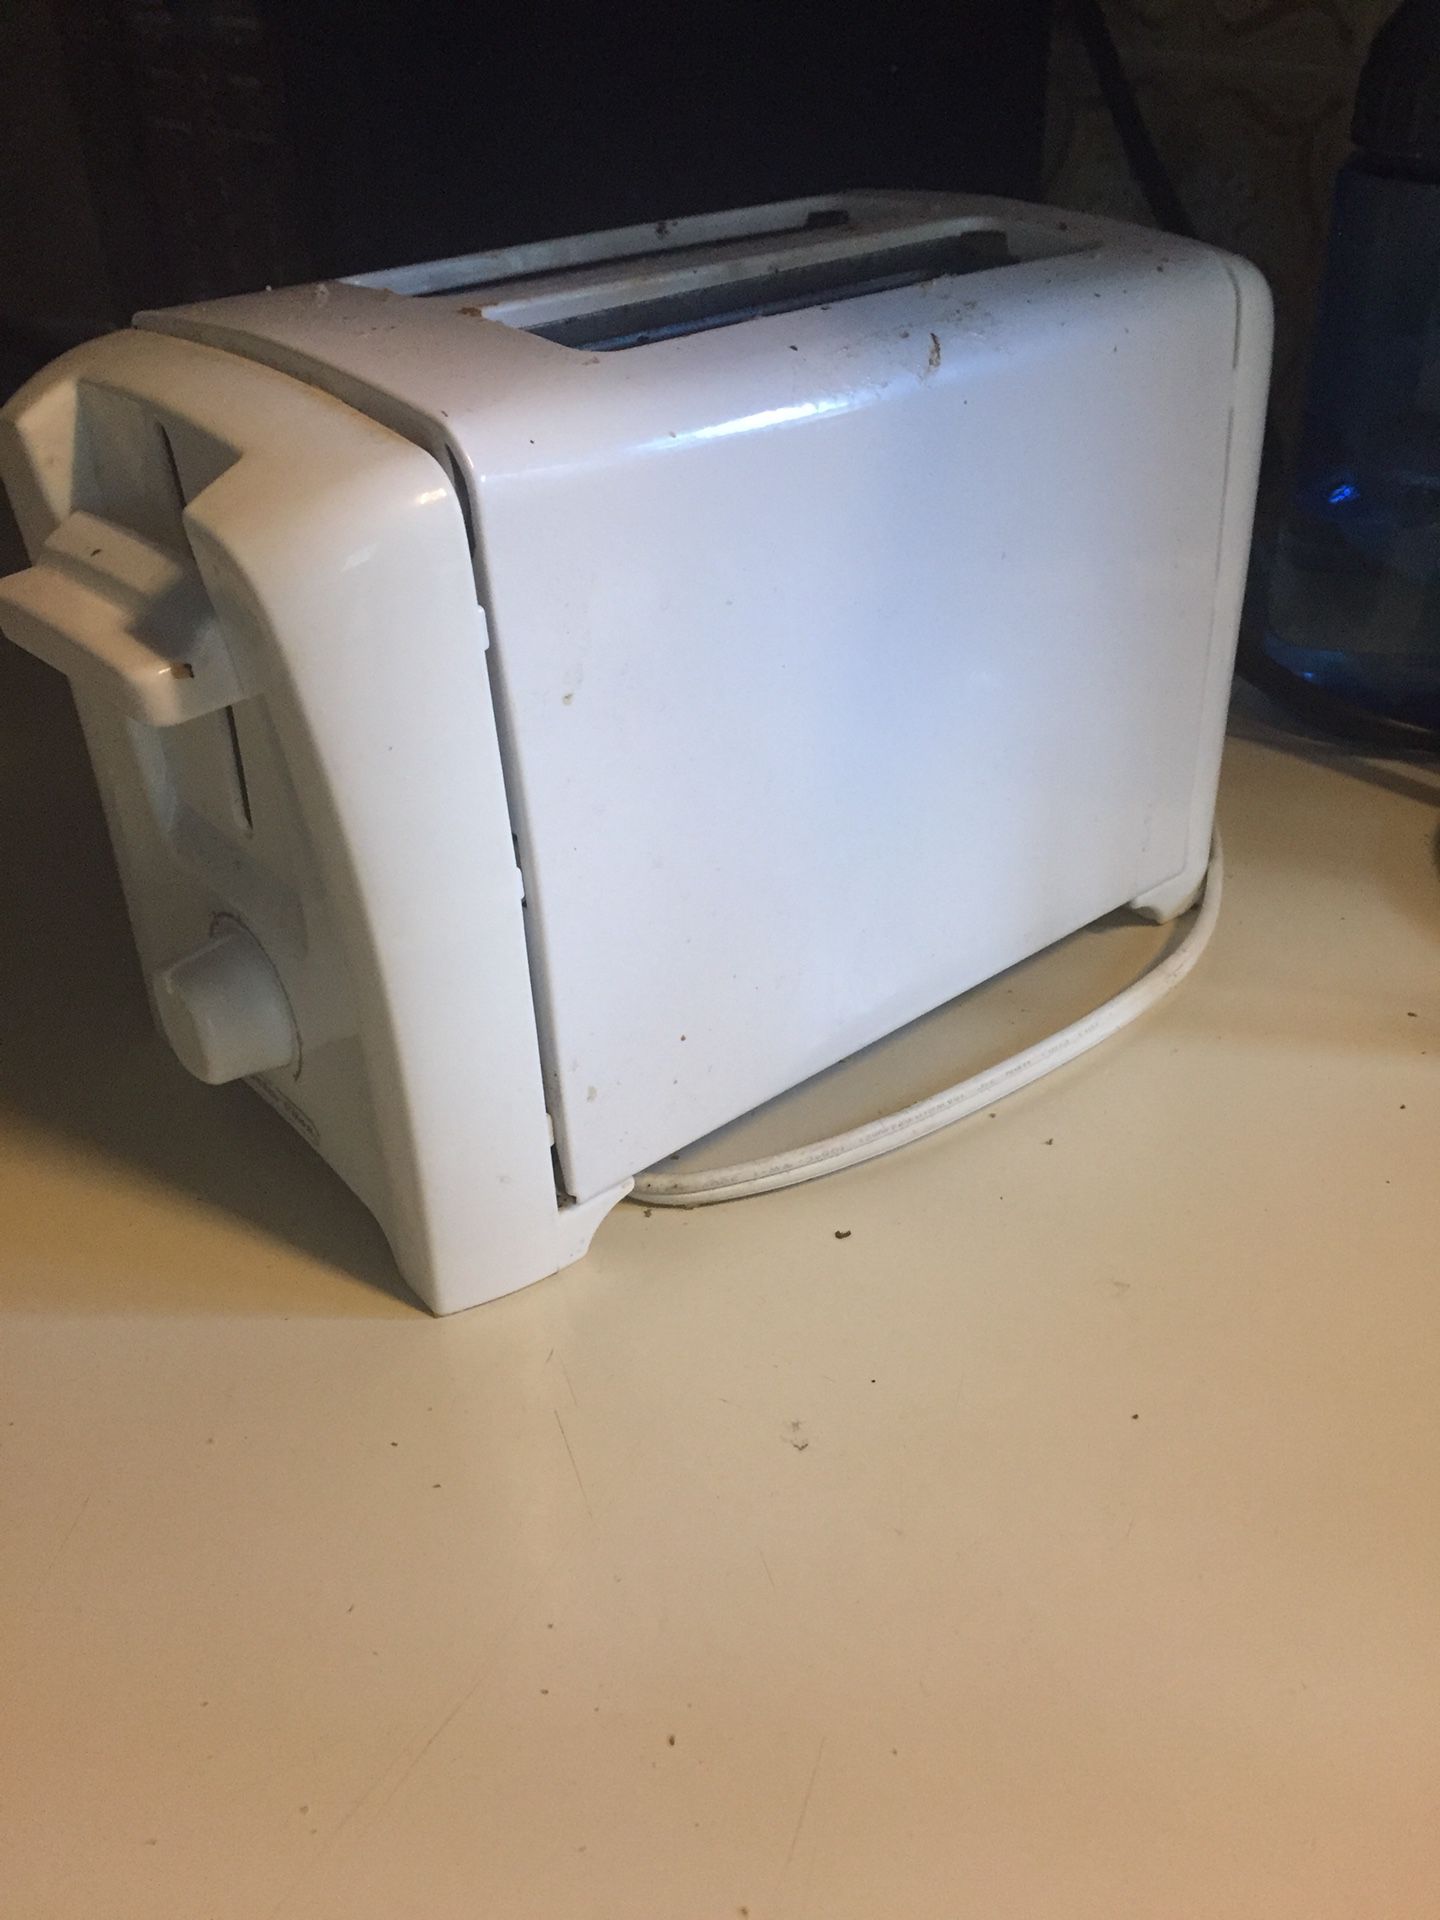 White toaster